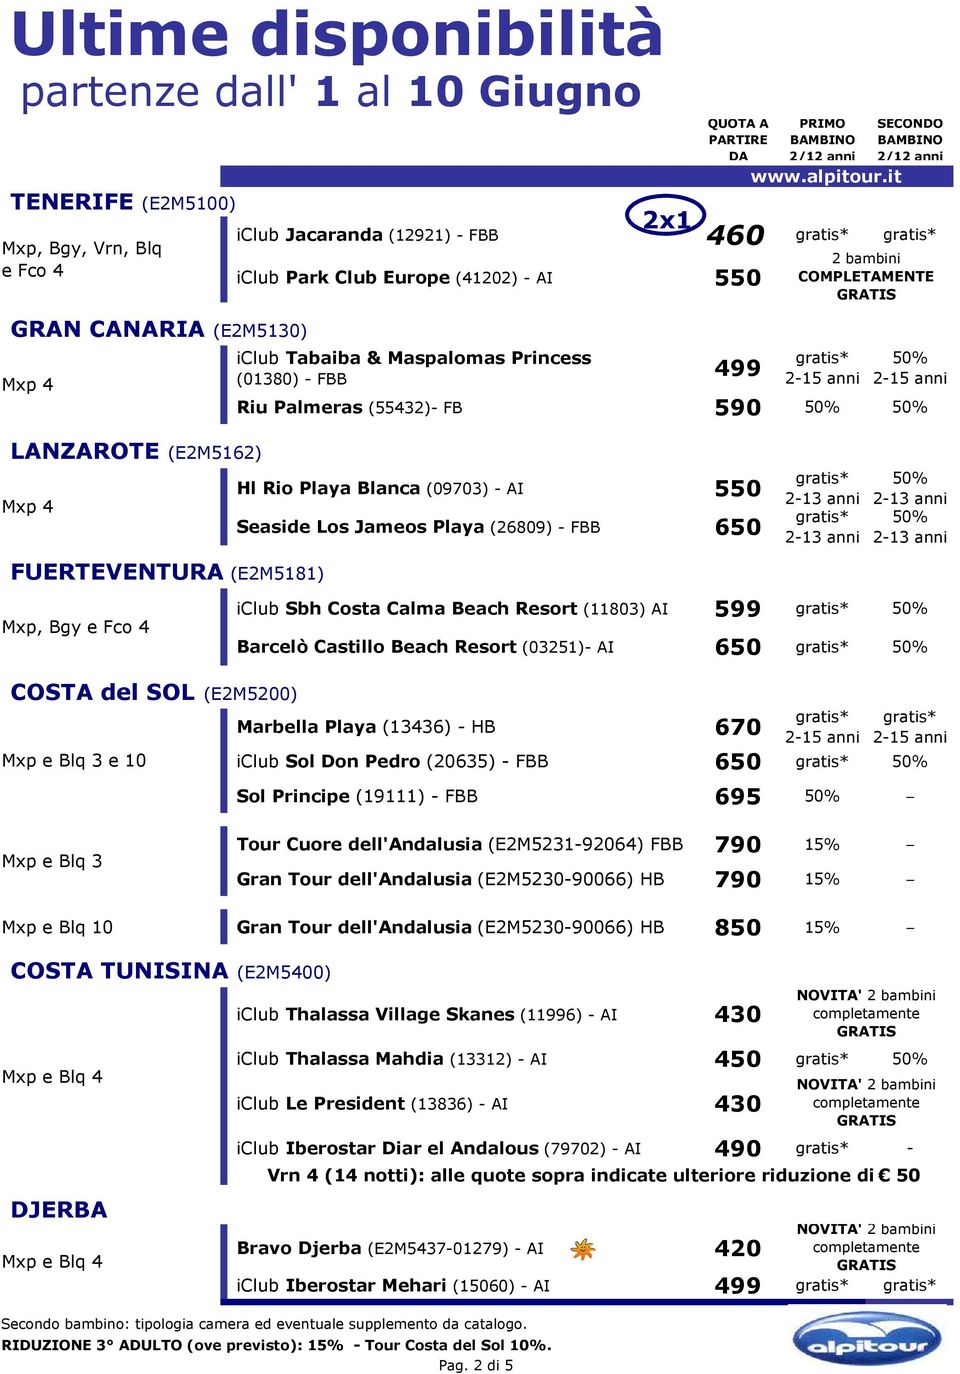 Costa Calma Beach Resort (11803) AI 599 Barcelò Castillo Beach Resort (03251)- AI 650 COSTA del SOL (E2M5200) Mxp e Blq 3 e 10 Marbella Playa (13436) - HB 670 iclub Sol Don Pedro (20635) - FBB 650